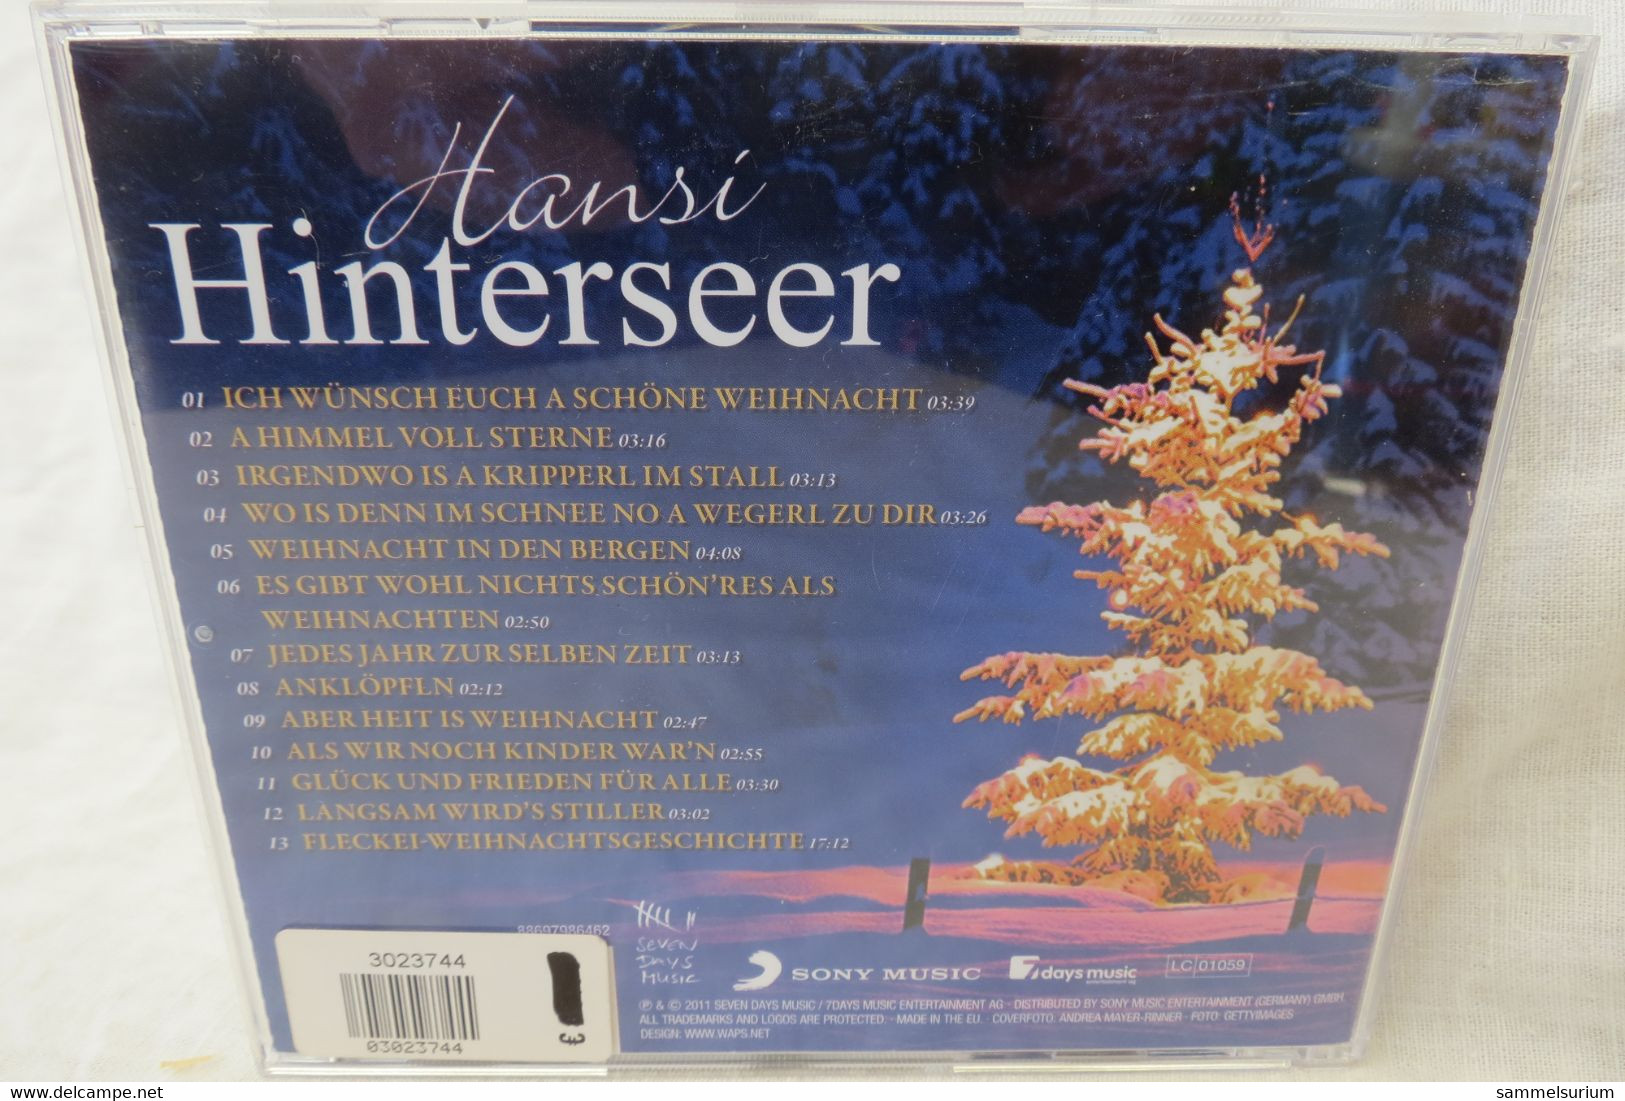 CD Hansi Hinterseer "Jedes Jahr Zur Selben Zeit" Mit Einer Wahren Weihnachtsgeschichte - Christmas Carols